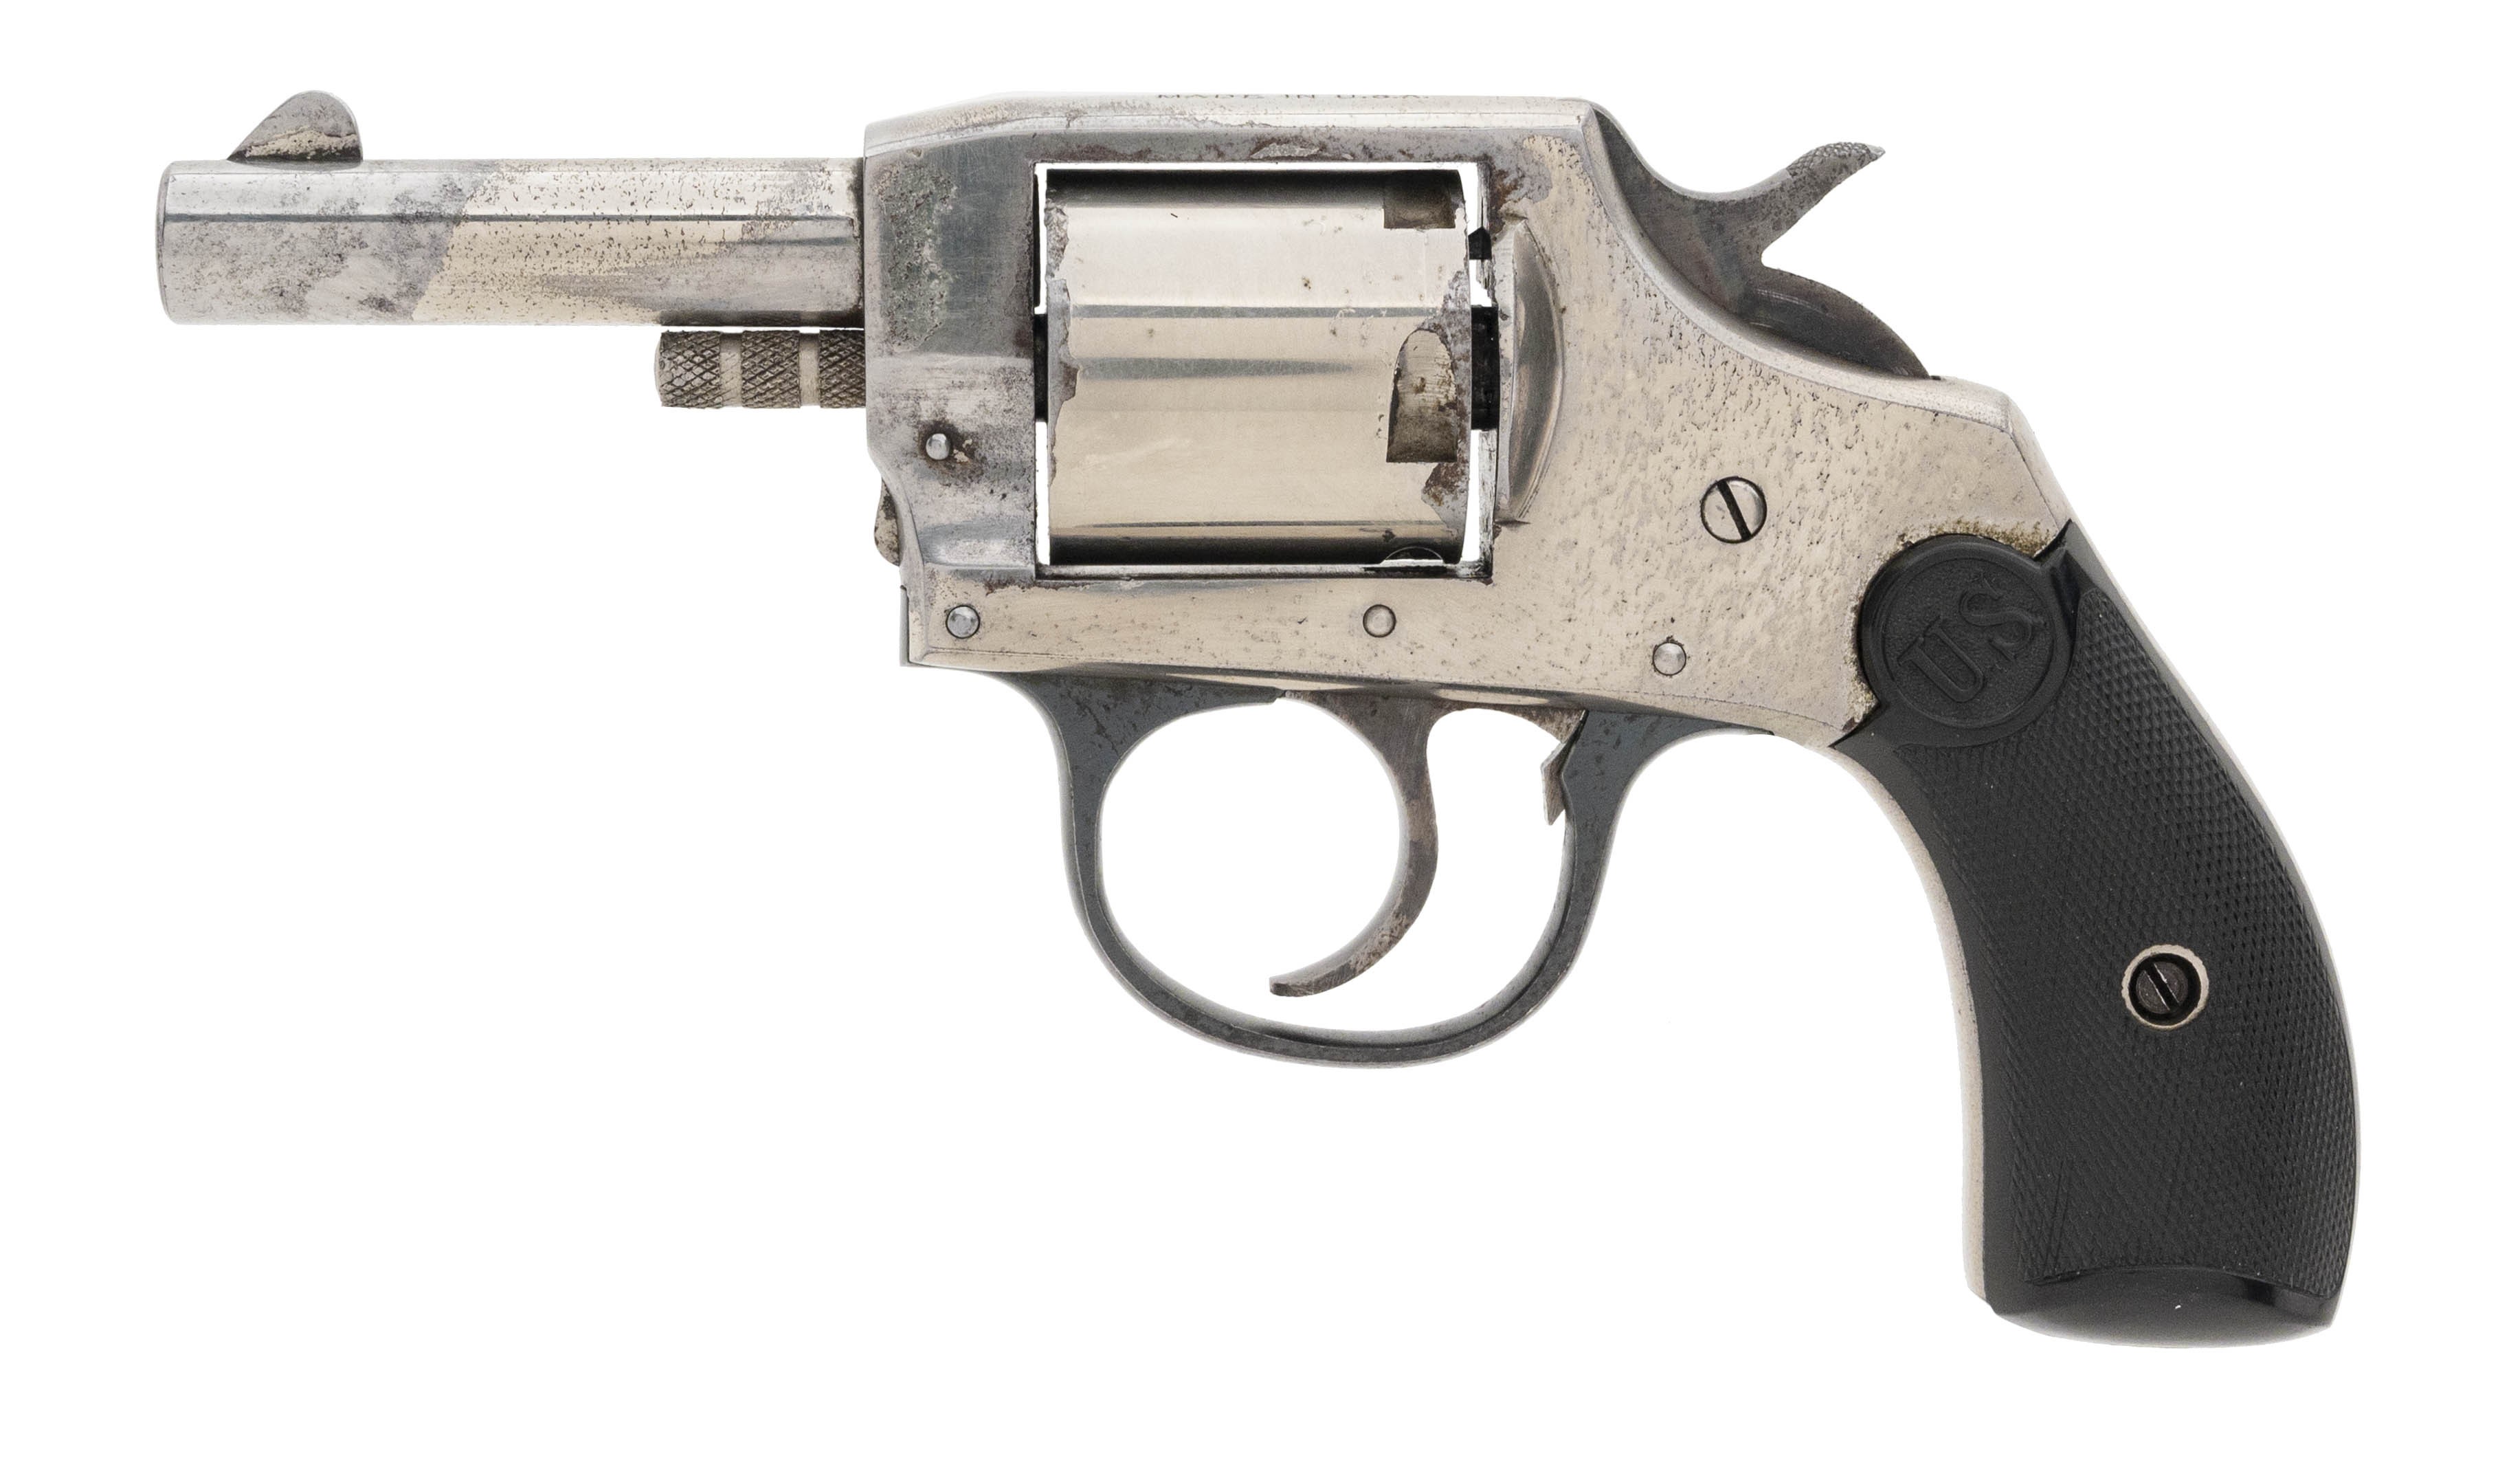 https://www.collectorsfirearms.com/897894/us-revolver-co-double-action-32-sw-pr61081.jpg